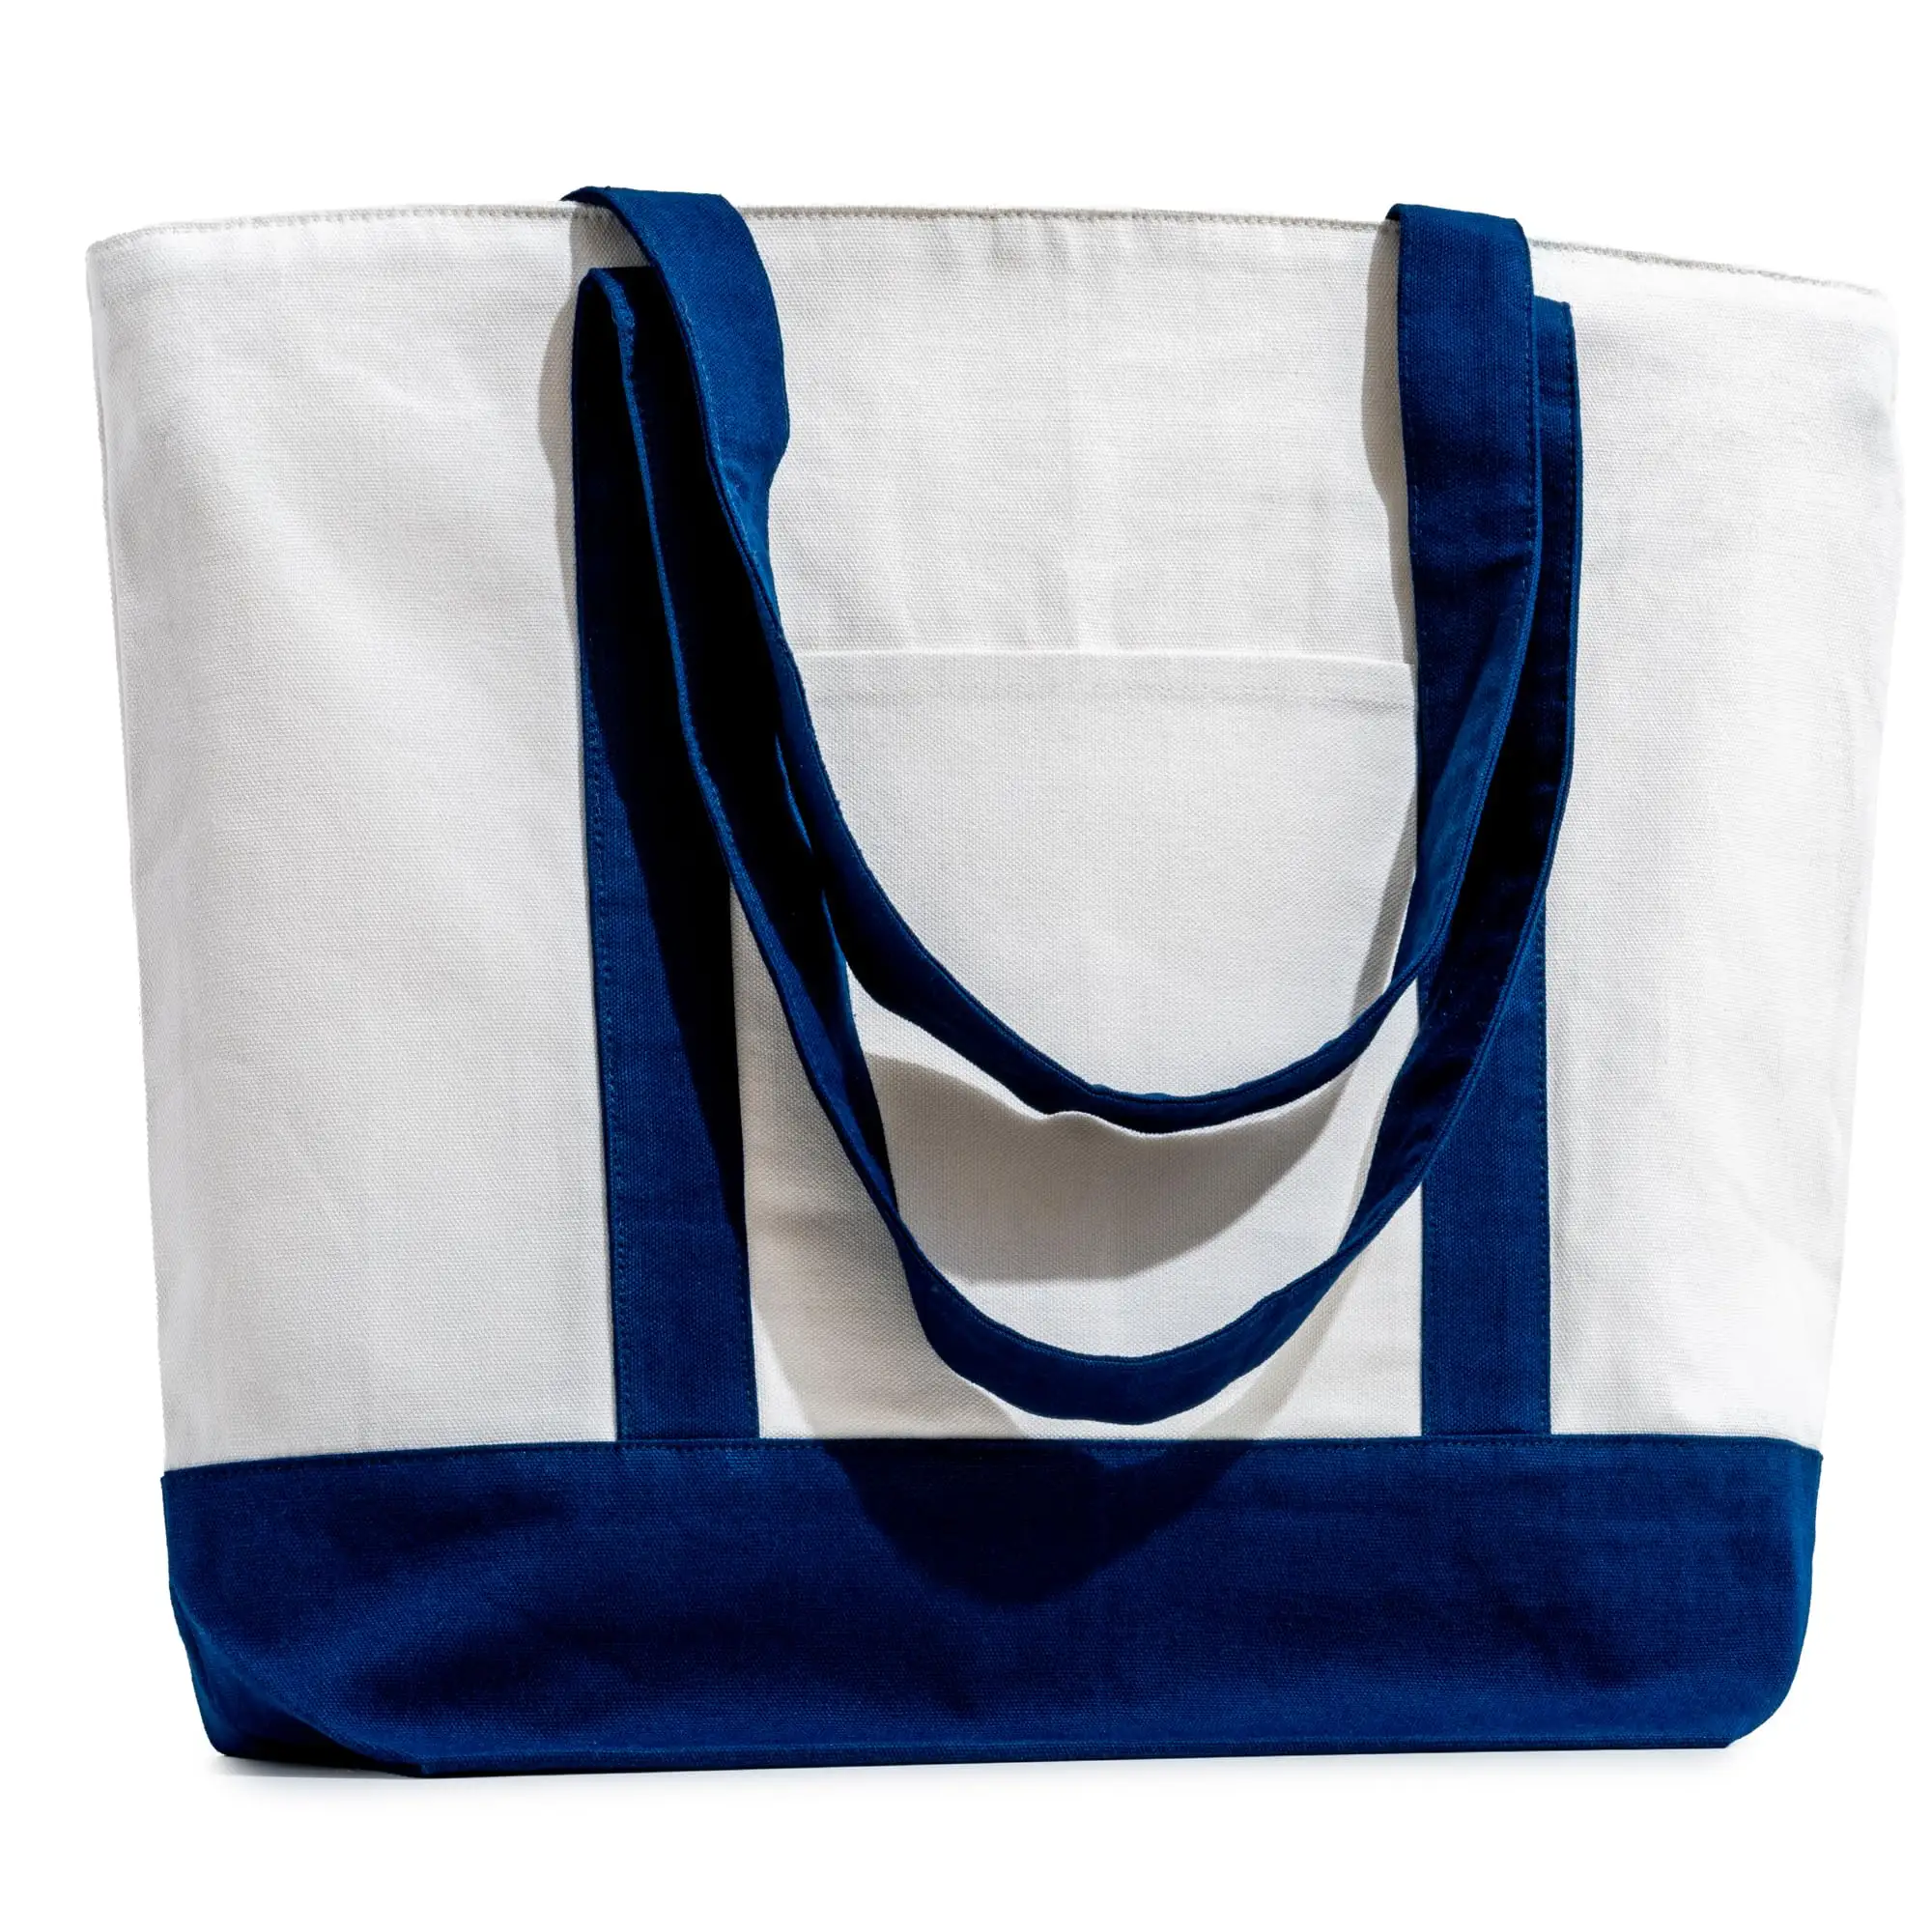 Özel tuval Tote çanta baskı logosu ağır tuval Tote çanta alışveriş hediyeler kadınlar için Vintage çanta tuval Tote çanta